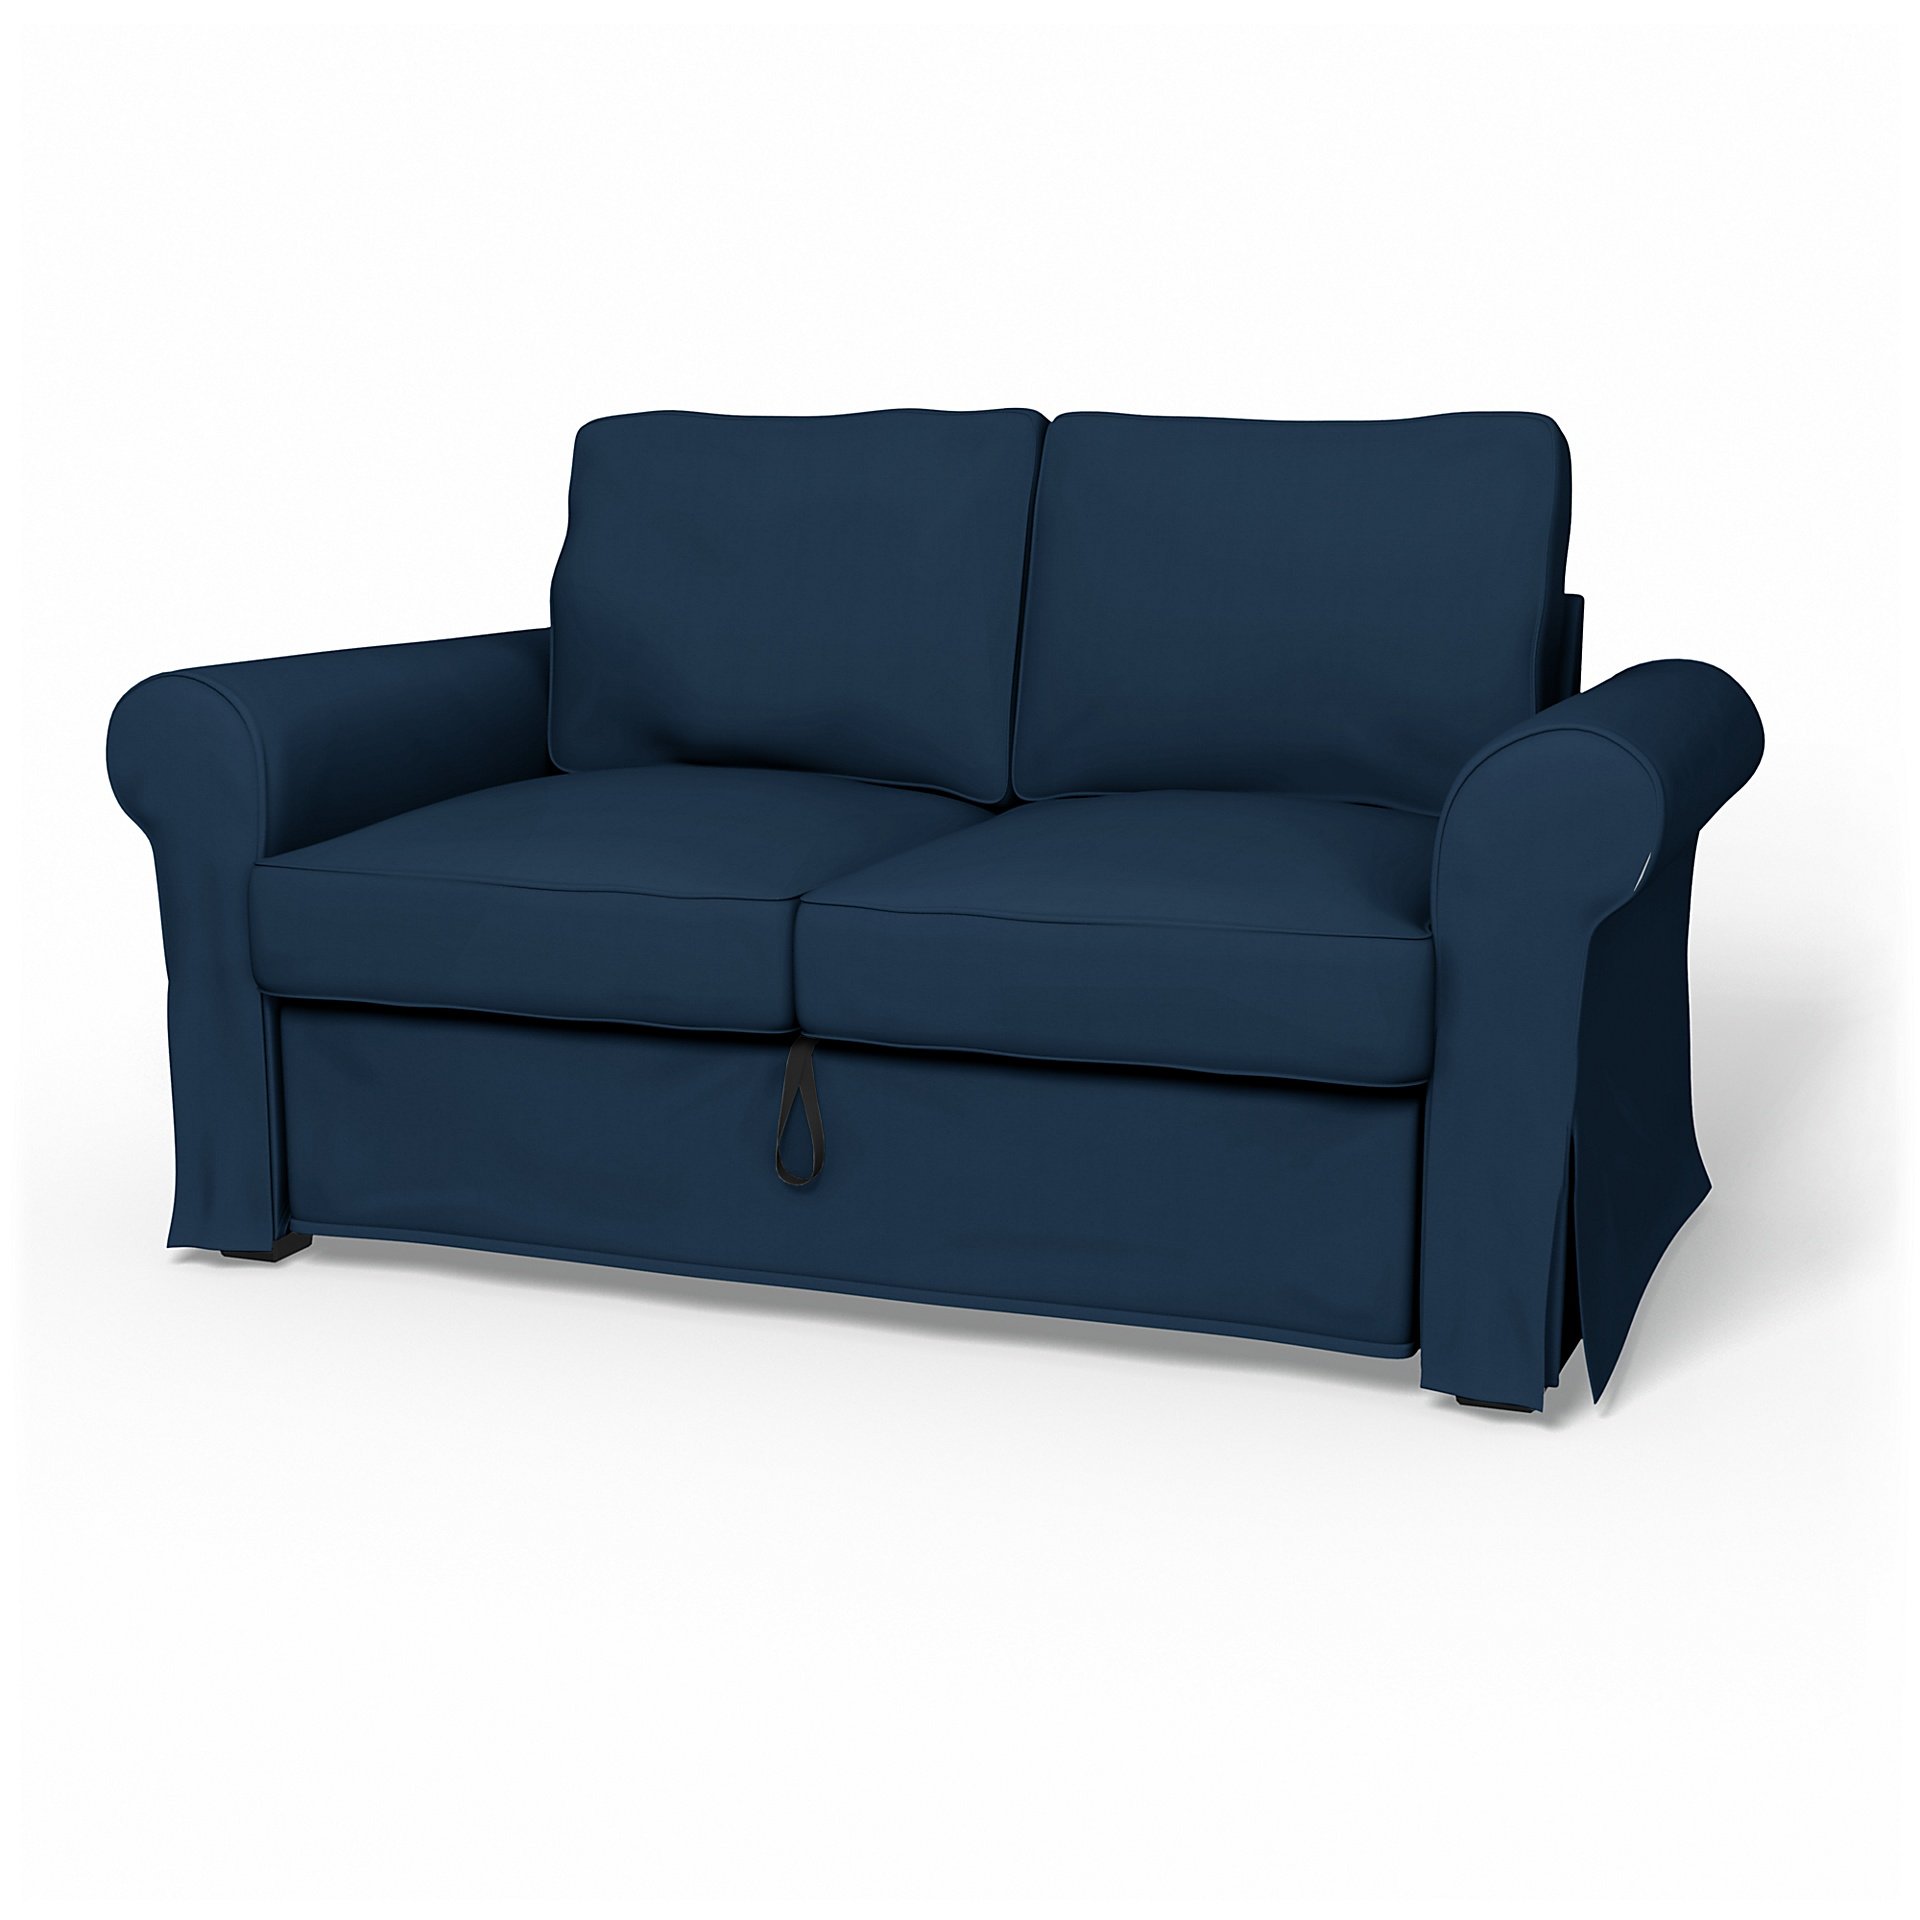 IKEA - Backabro 2 Seater Sofa Bed Cover, Deep Navy Blue, Cotton - Bemz